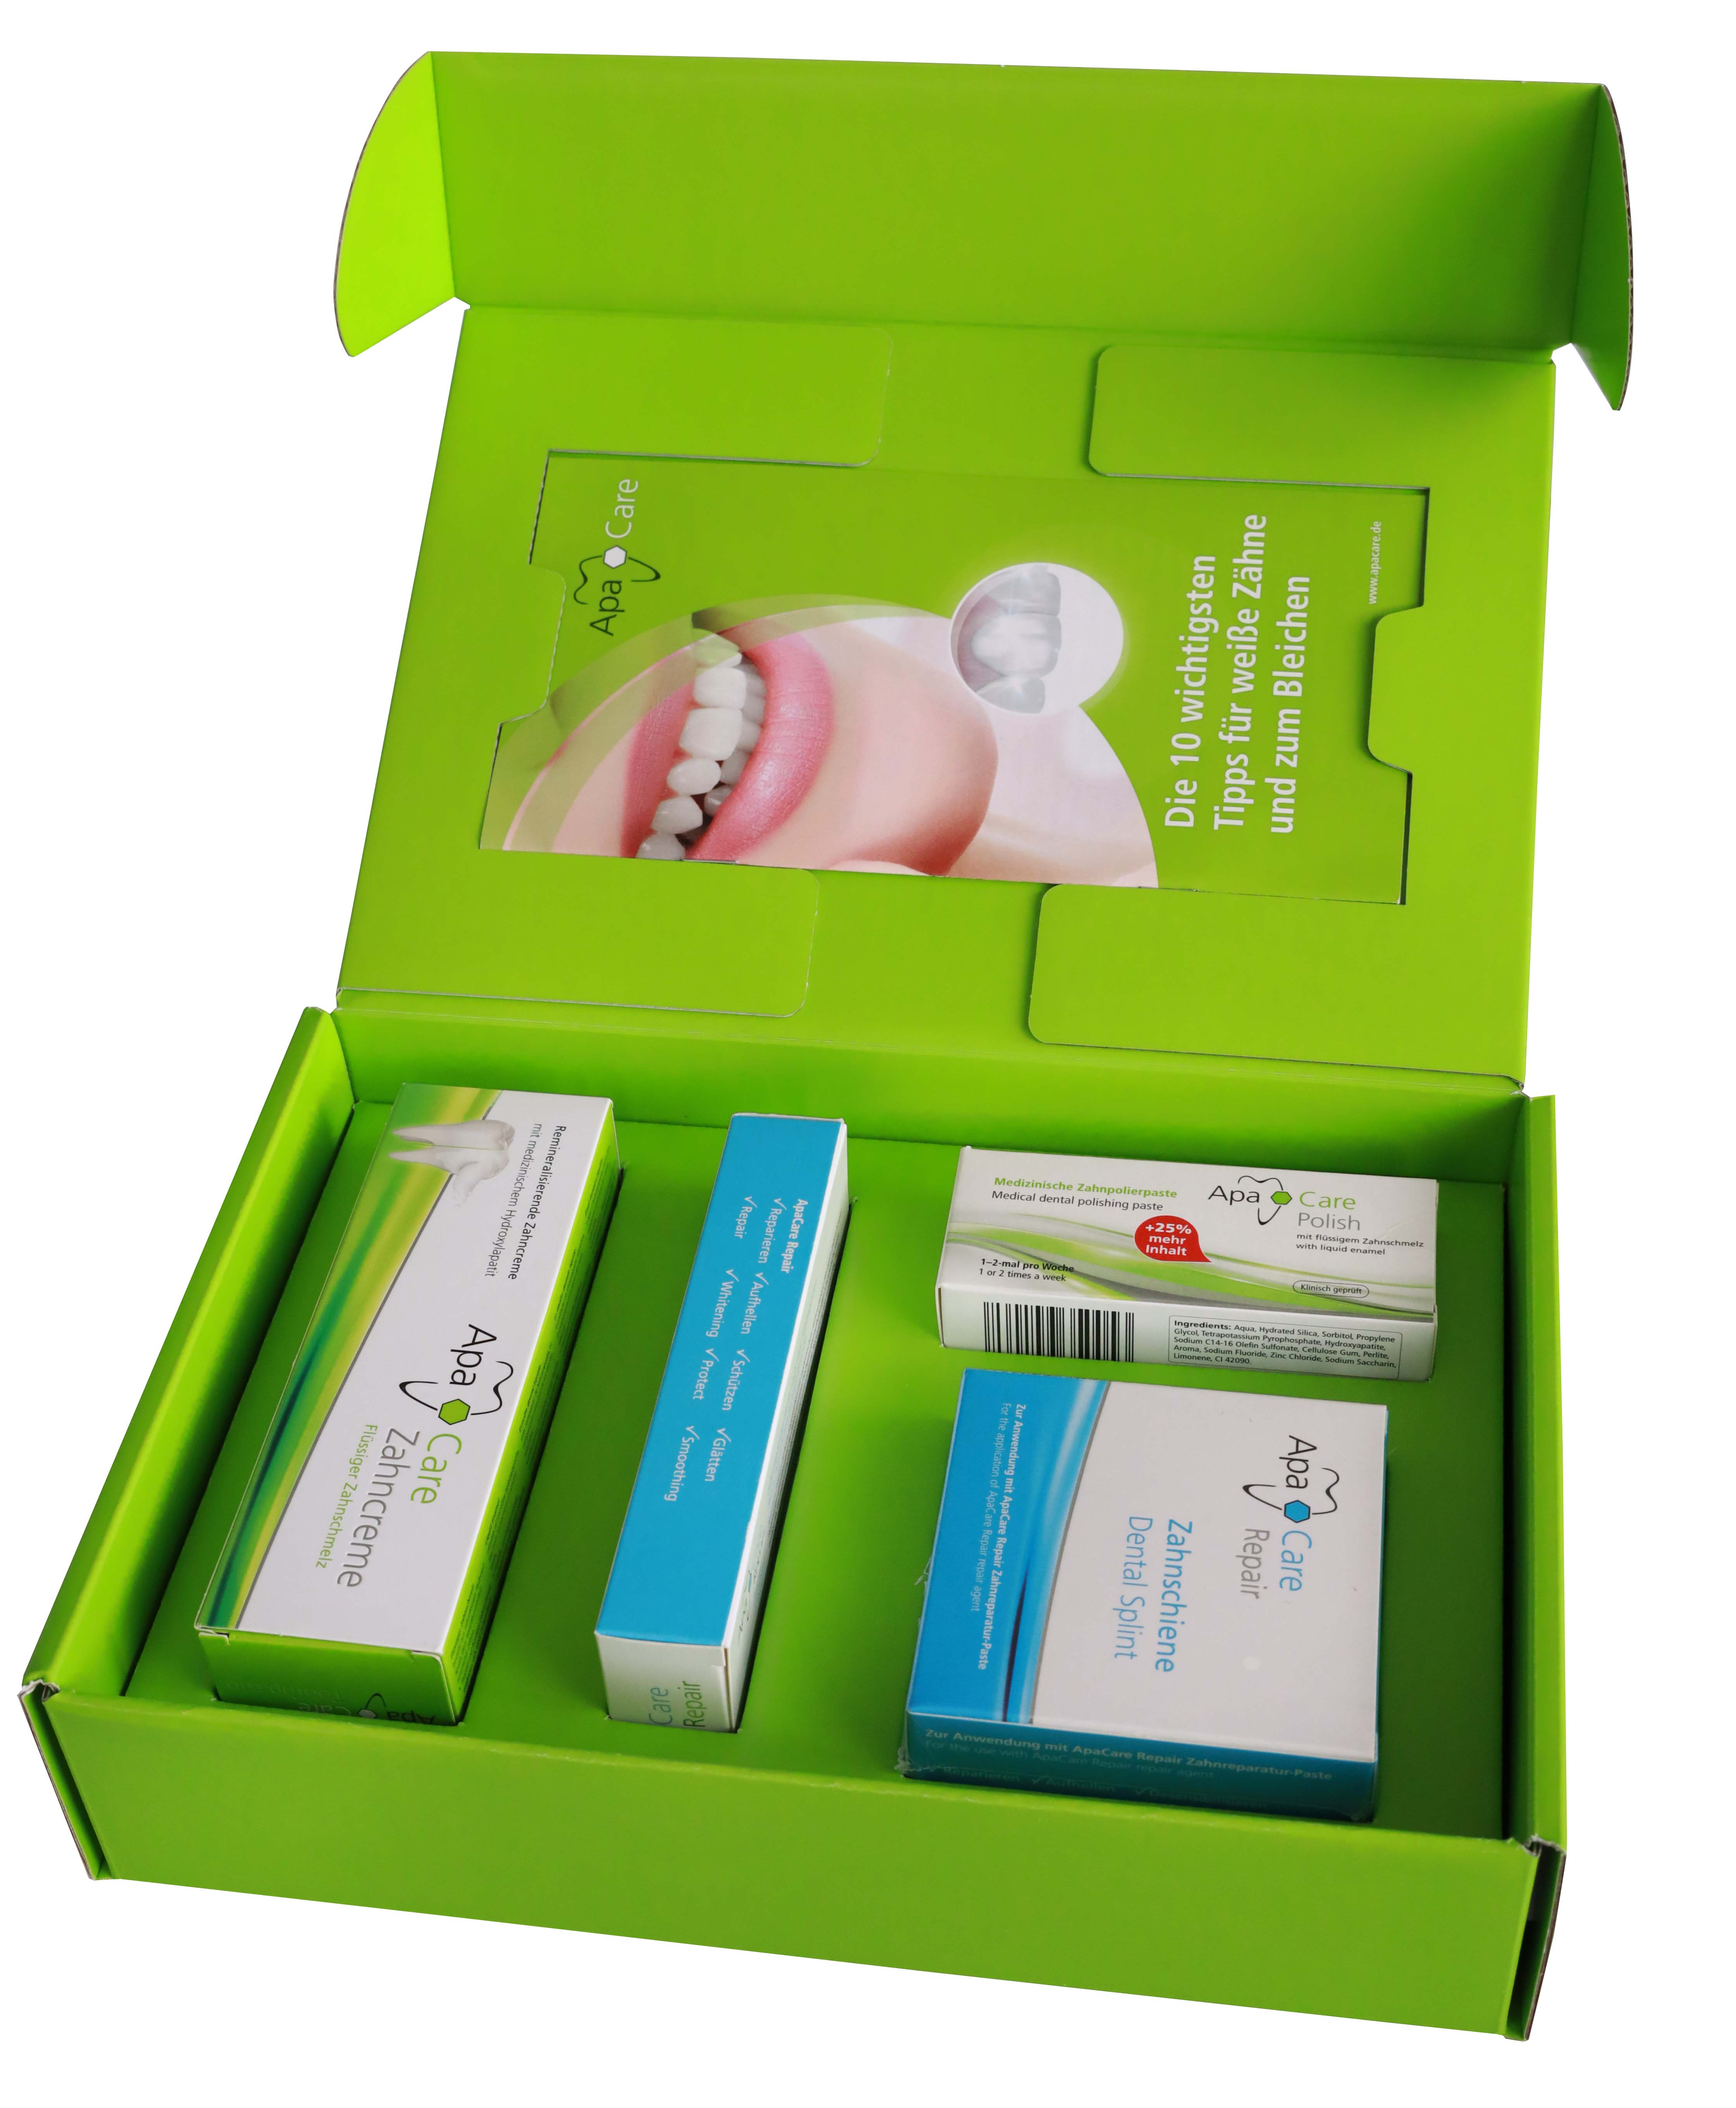 ApaCare Zahnpflege Produkte mit flüssigem Zahnschmelz